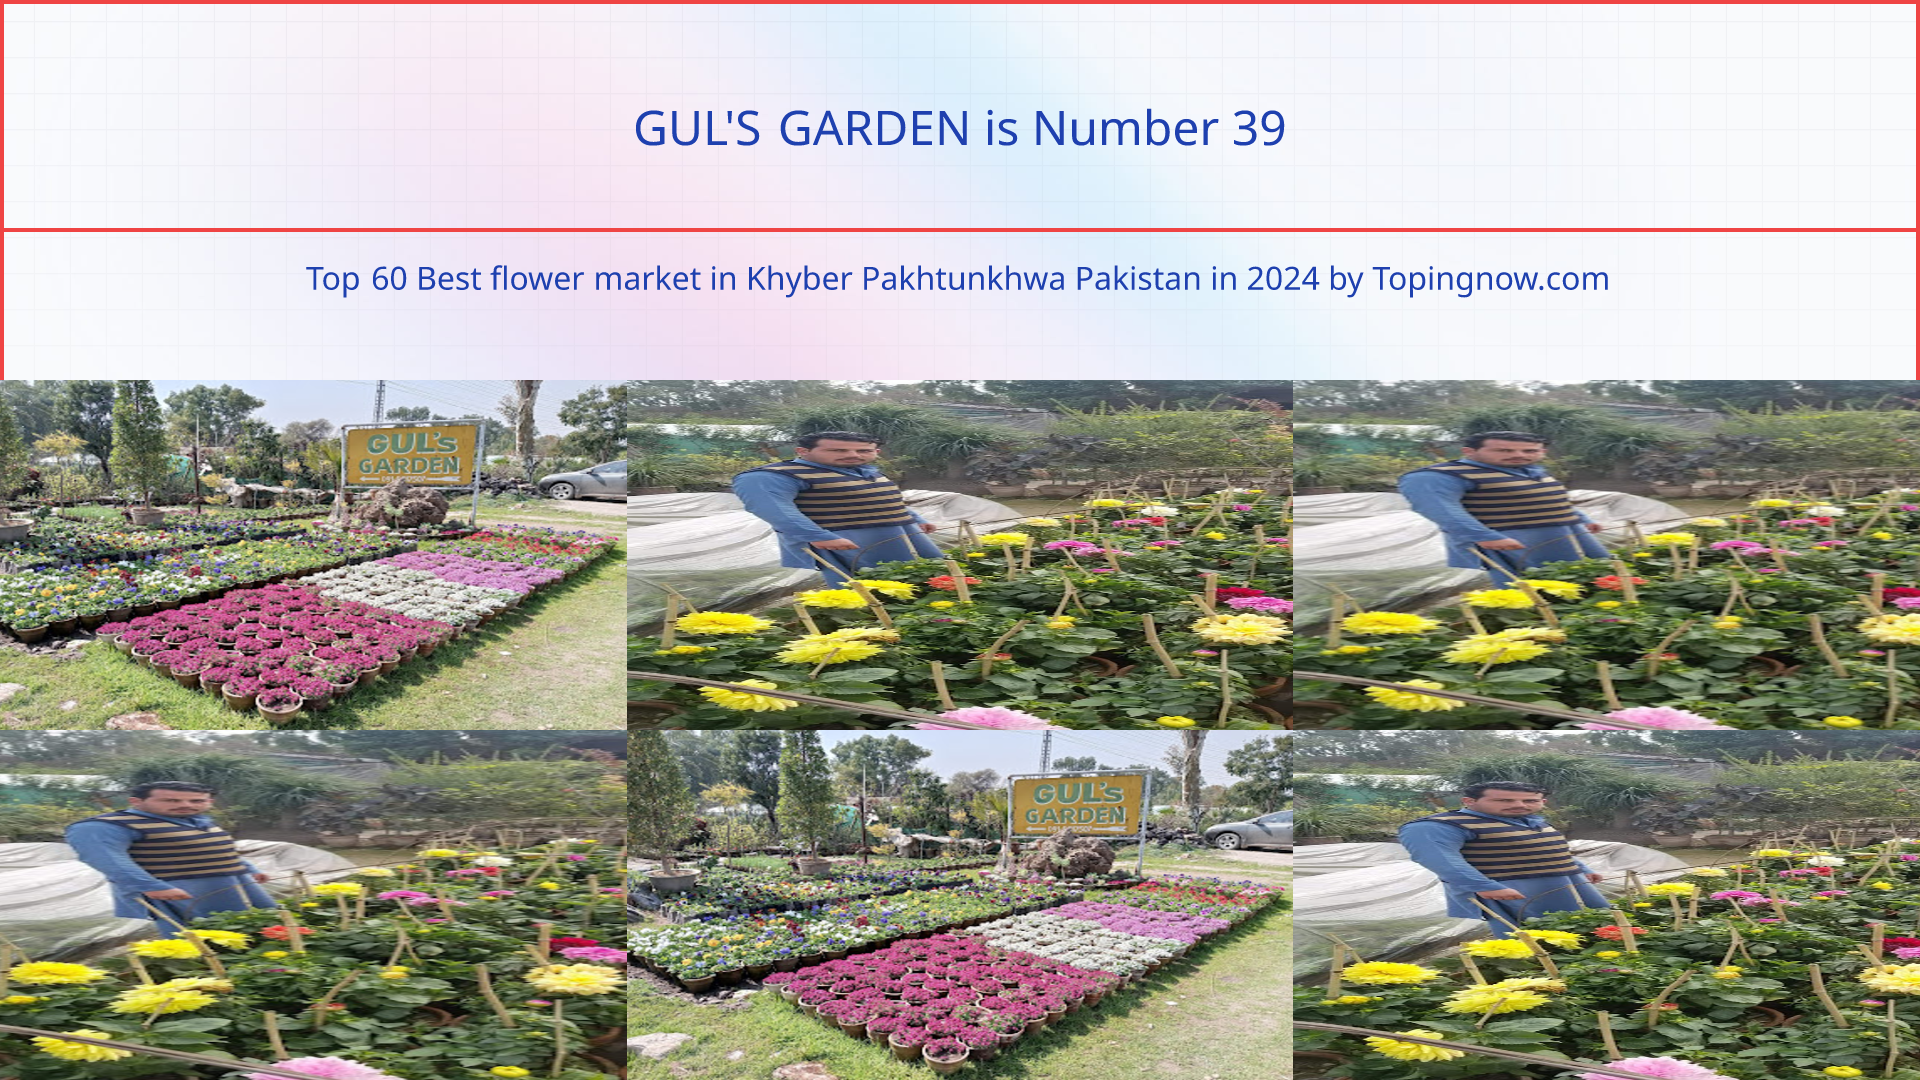 GUL'S GARDEN: Top 60 Best flower market in Khyber Pakhtunkhwa Pakistan in 2024